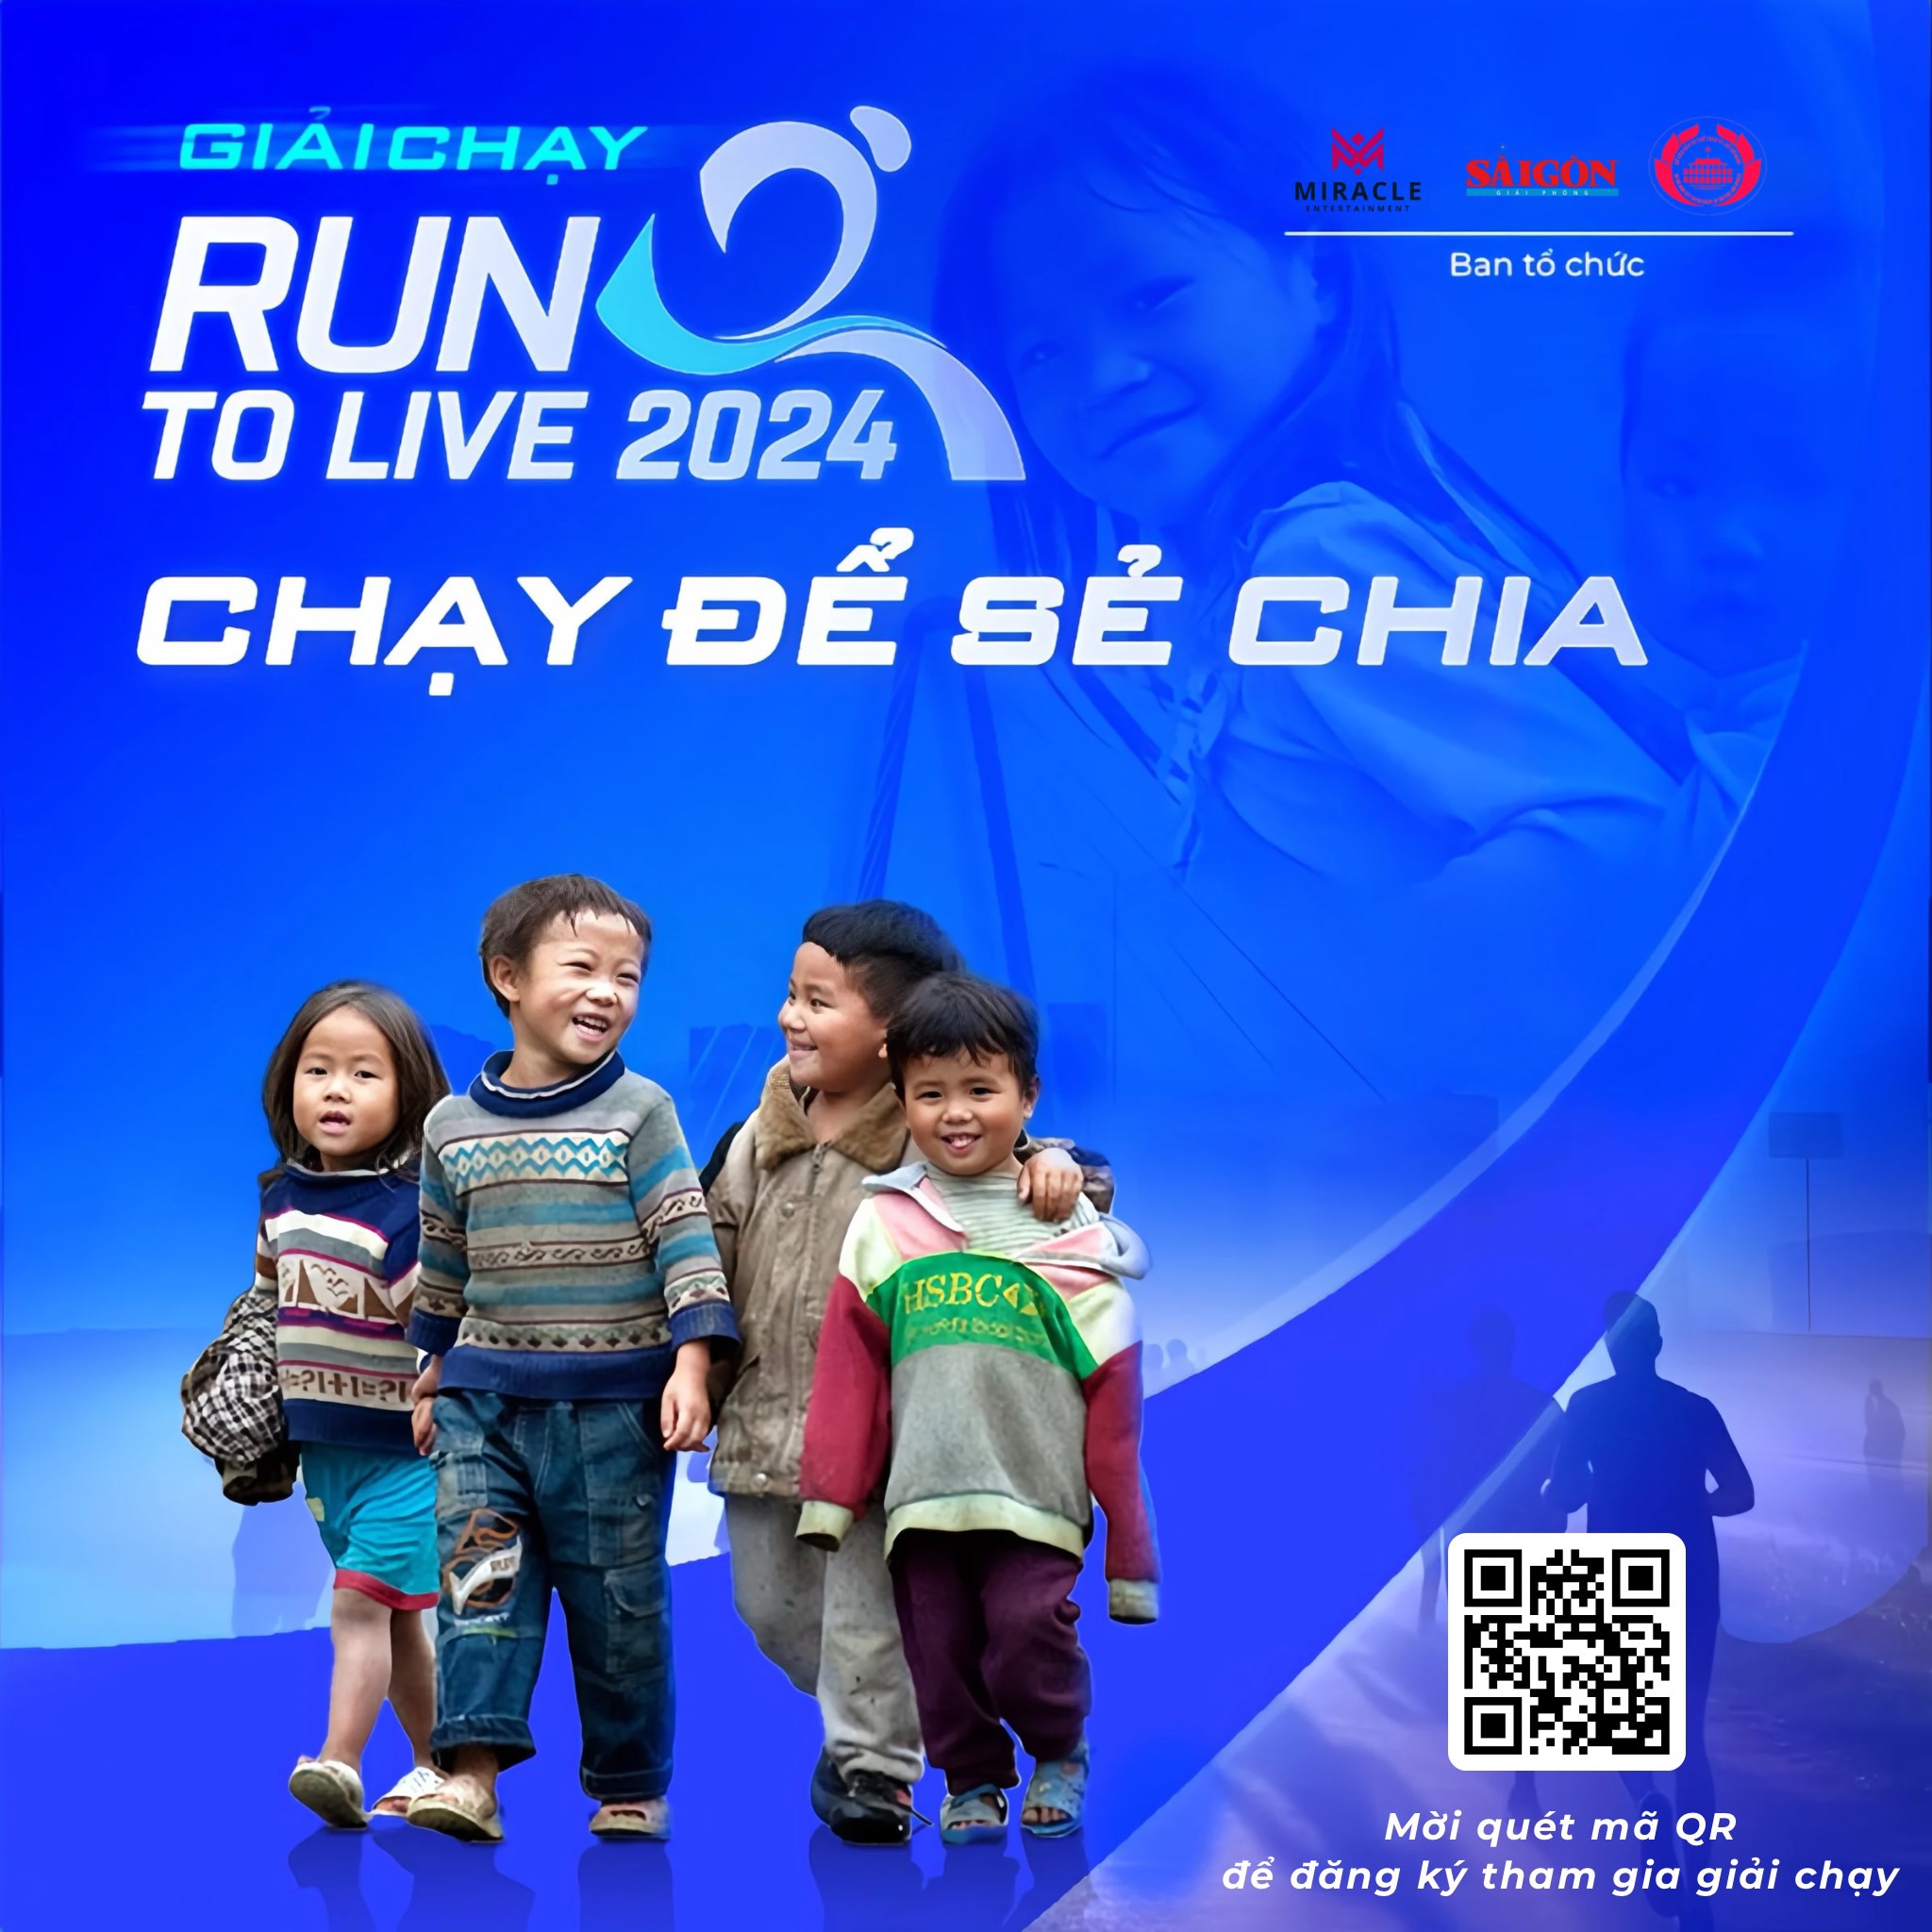 Giải chạy Run To Live 2024 Sau 10 ngày mở cổng đăng ký, hơn 3.000 VĐV